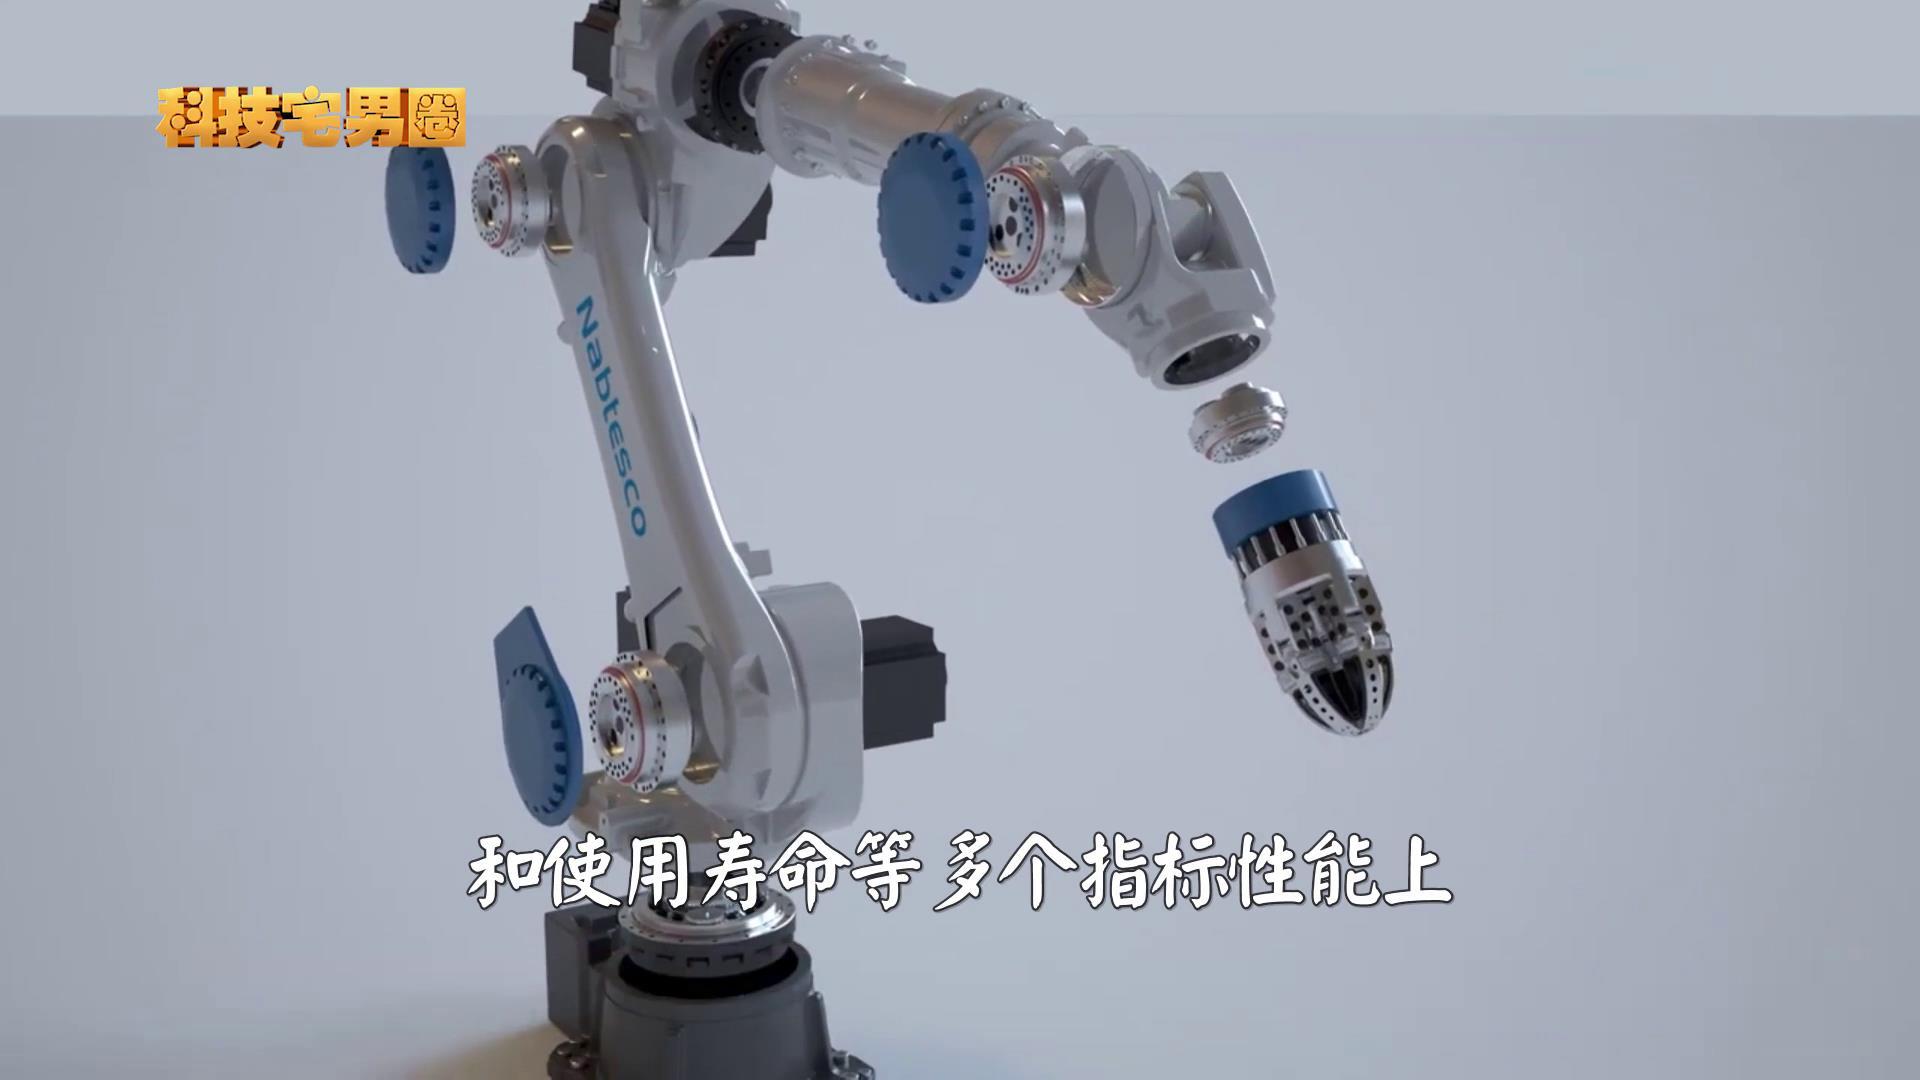 打破日本30年垄断历史!中国工业机器人减速器终于熬出头了